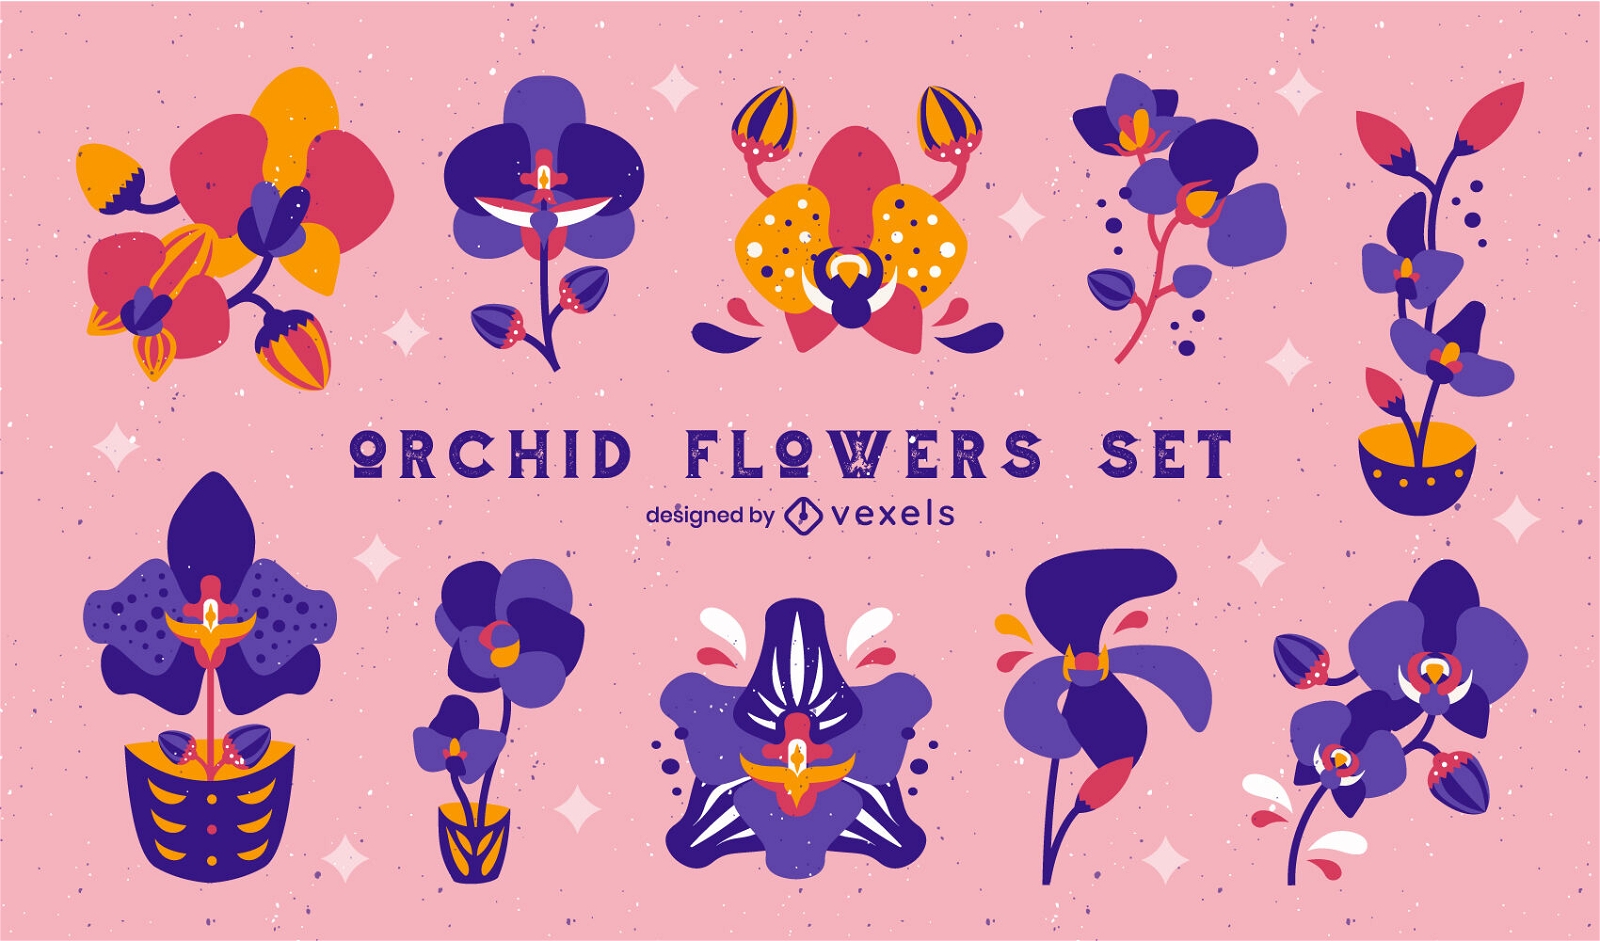 Diseño de escenografía de flores de orquídeas.